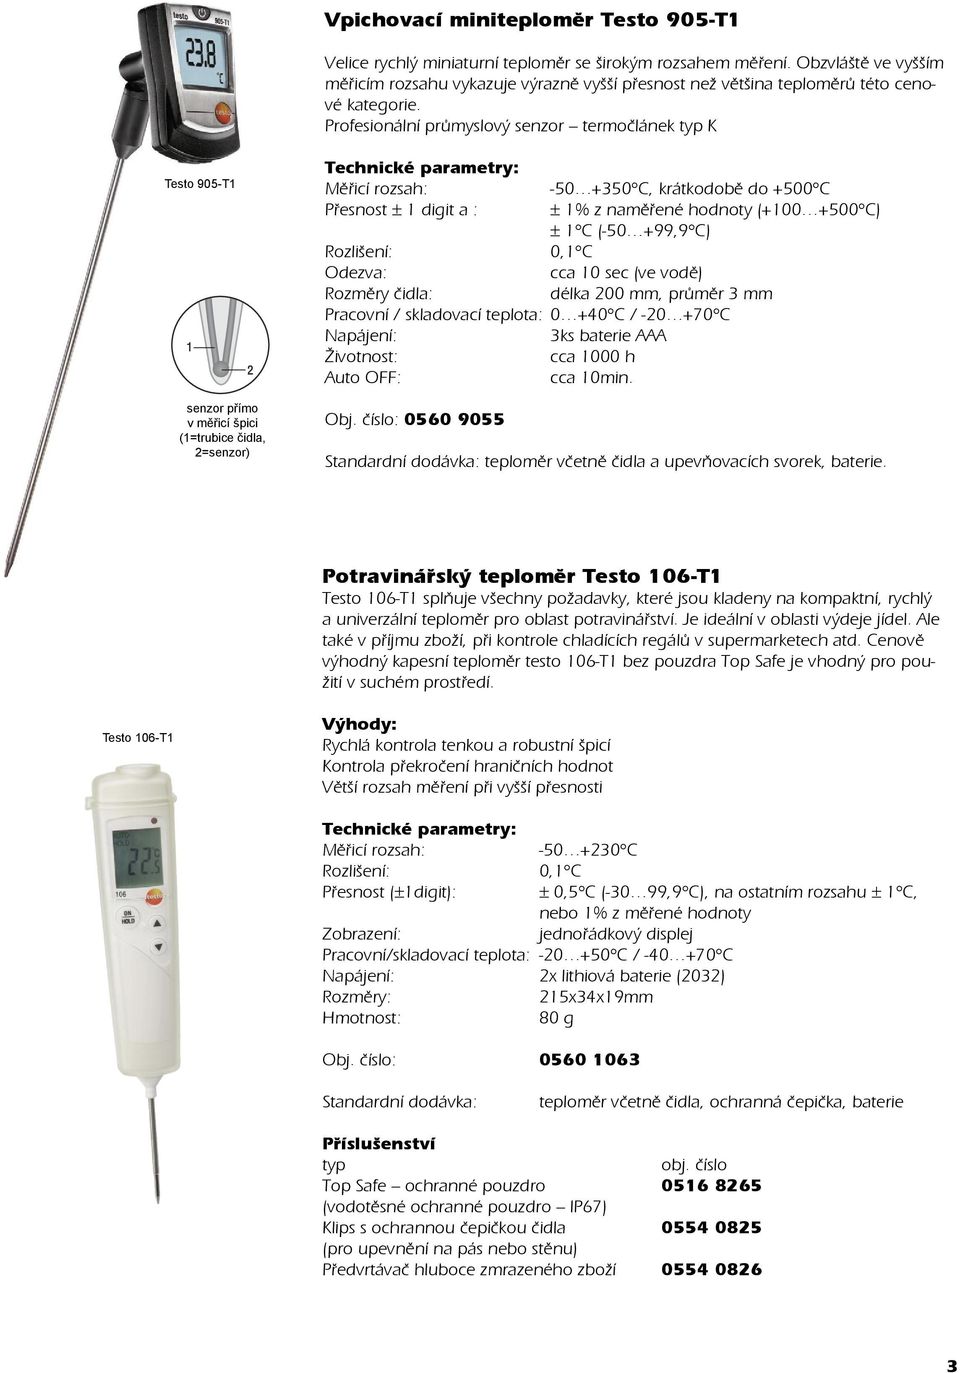 Profesionální průmyslový senzor termočlánek typ K Testo 905-T1 senzor přímo v měřicí špici (1=trubice čidla, 2=senzor) Měřicí rozsah: -50 +350 C, krátkodobě do +500 C Přesnost ± 1 digit a : ± 1% z